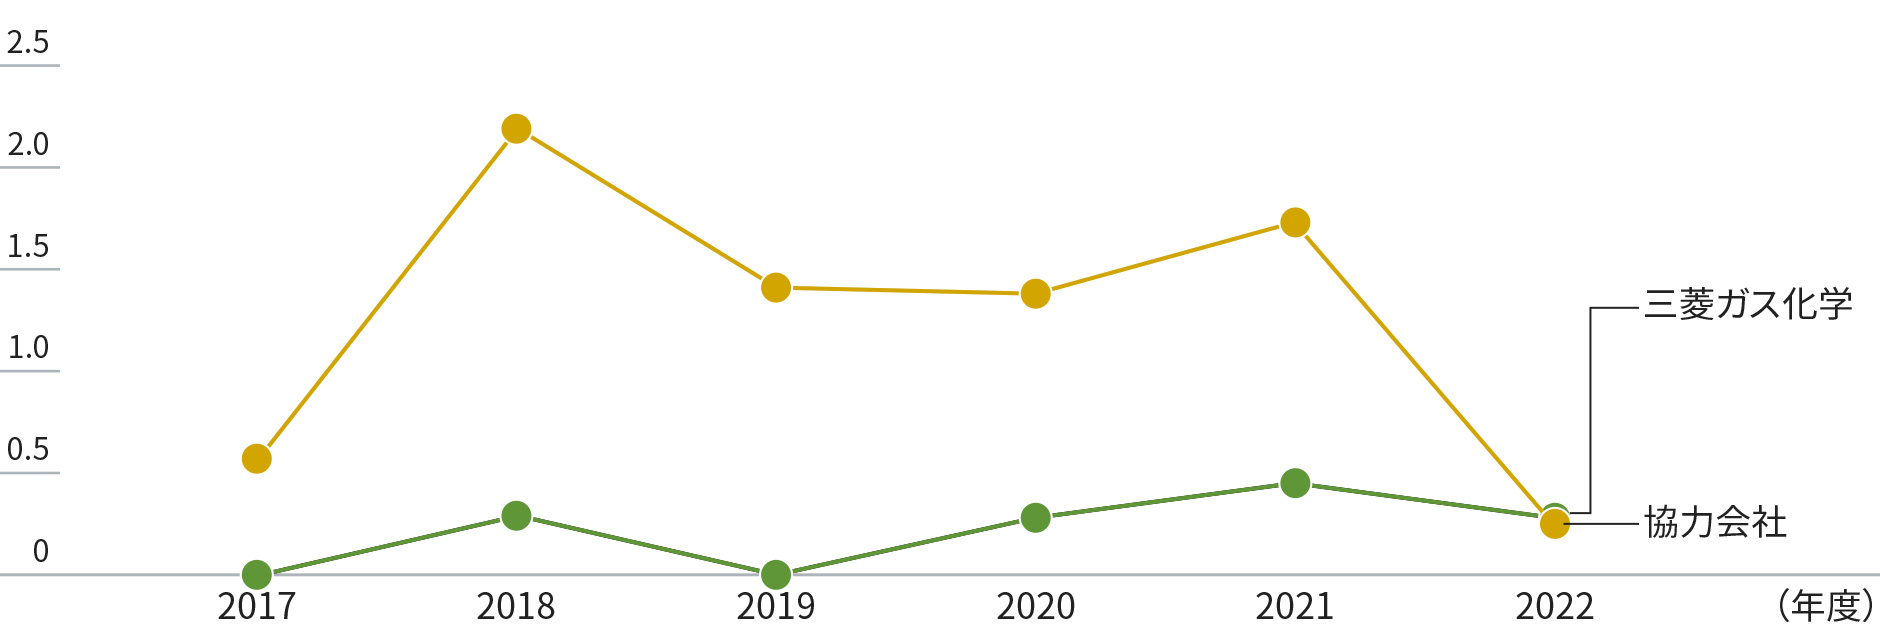 グラフ：休業災害に係る度数率。三菱ガス化学と協力会社の度数率を年度別に示しています。